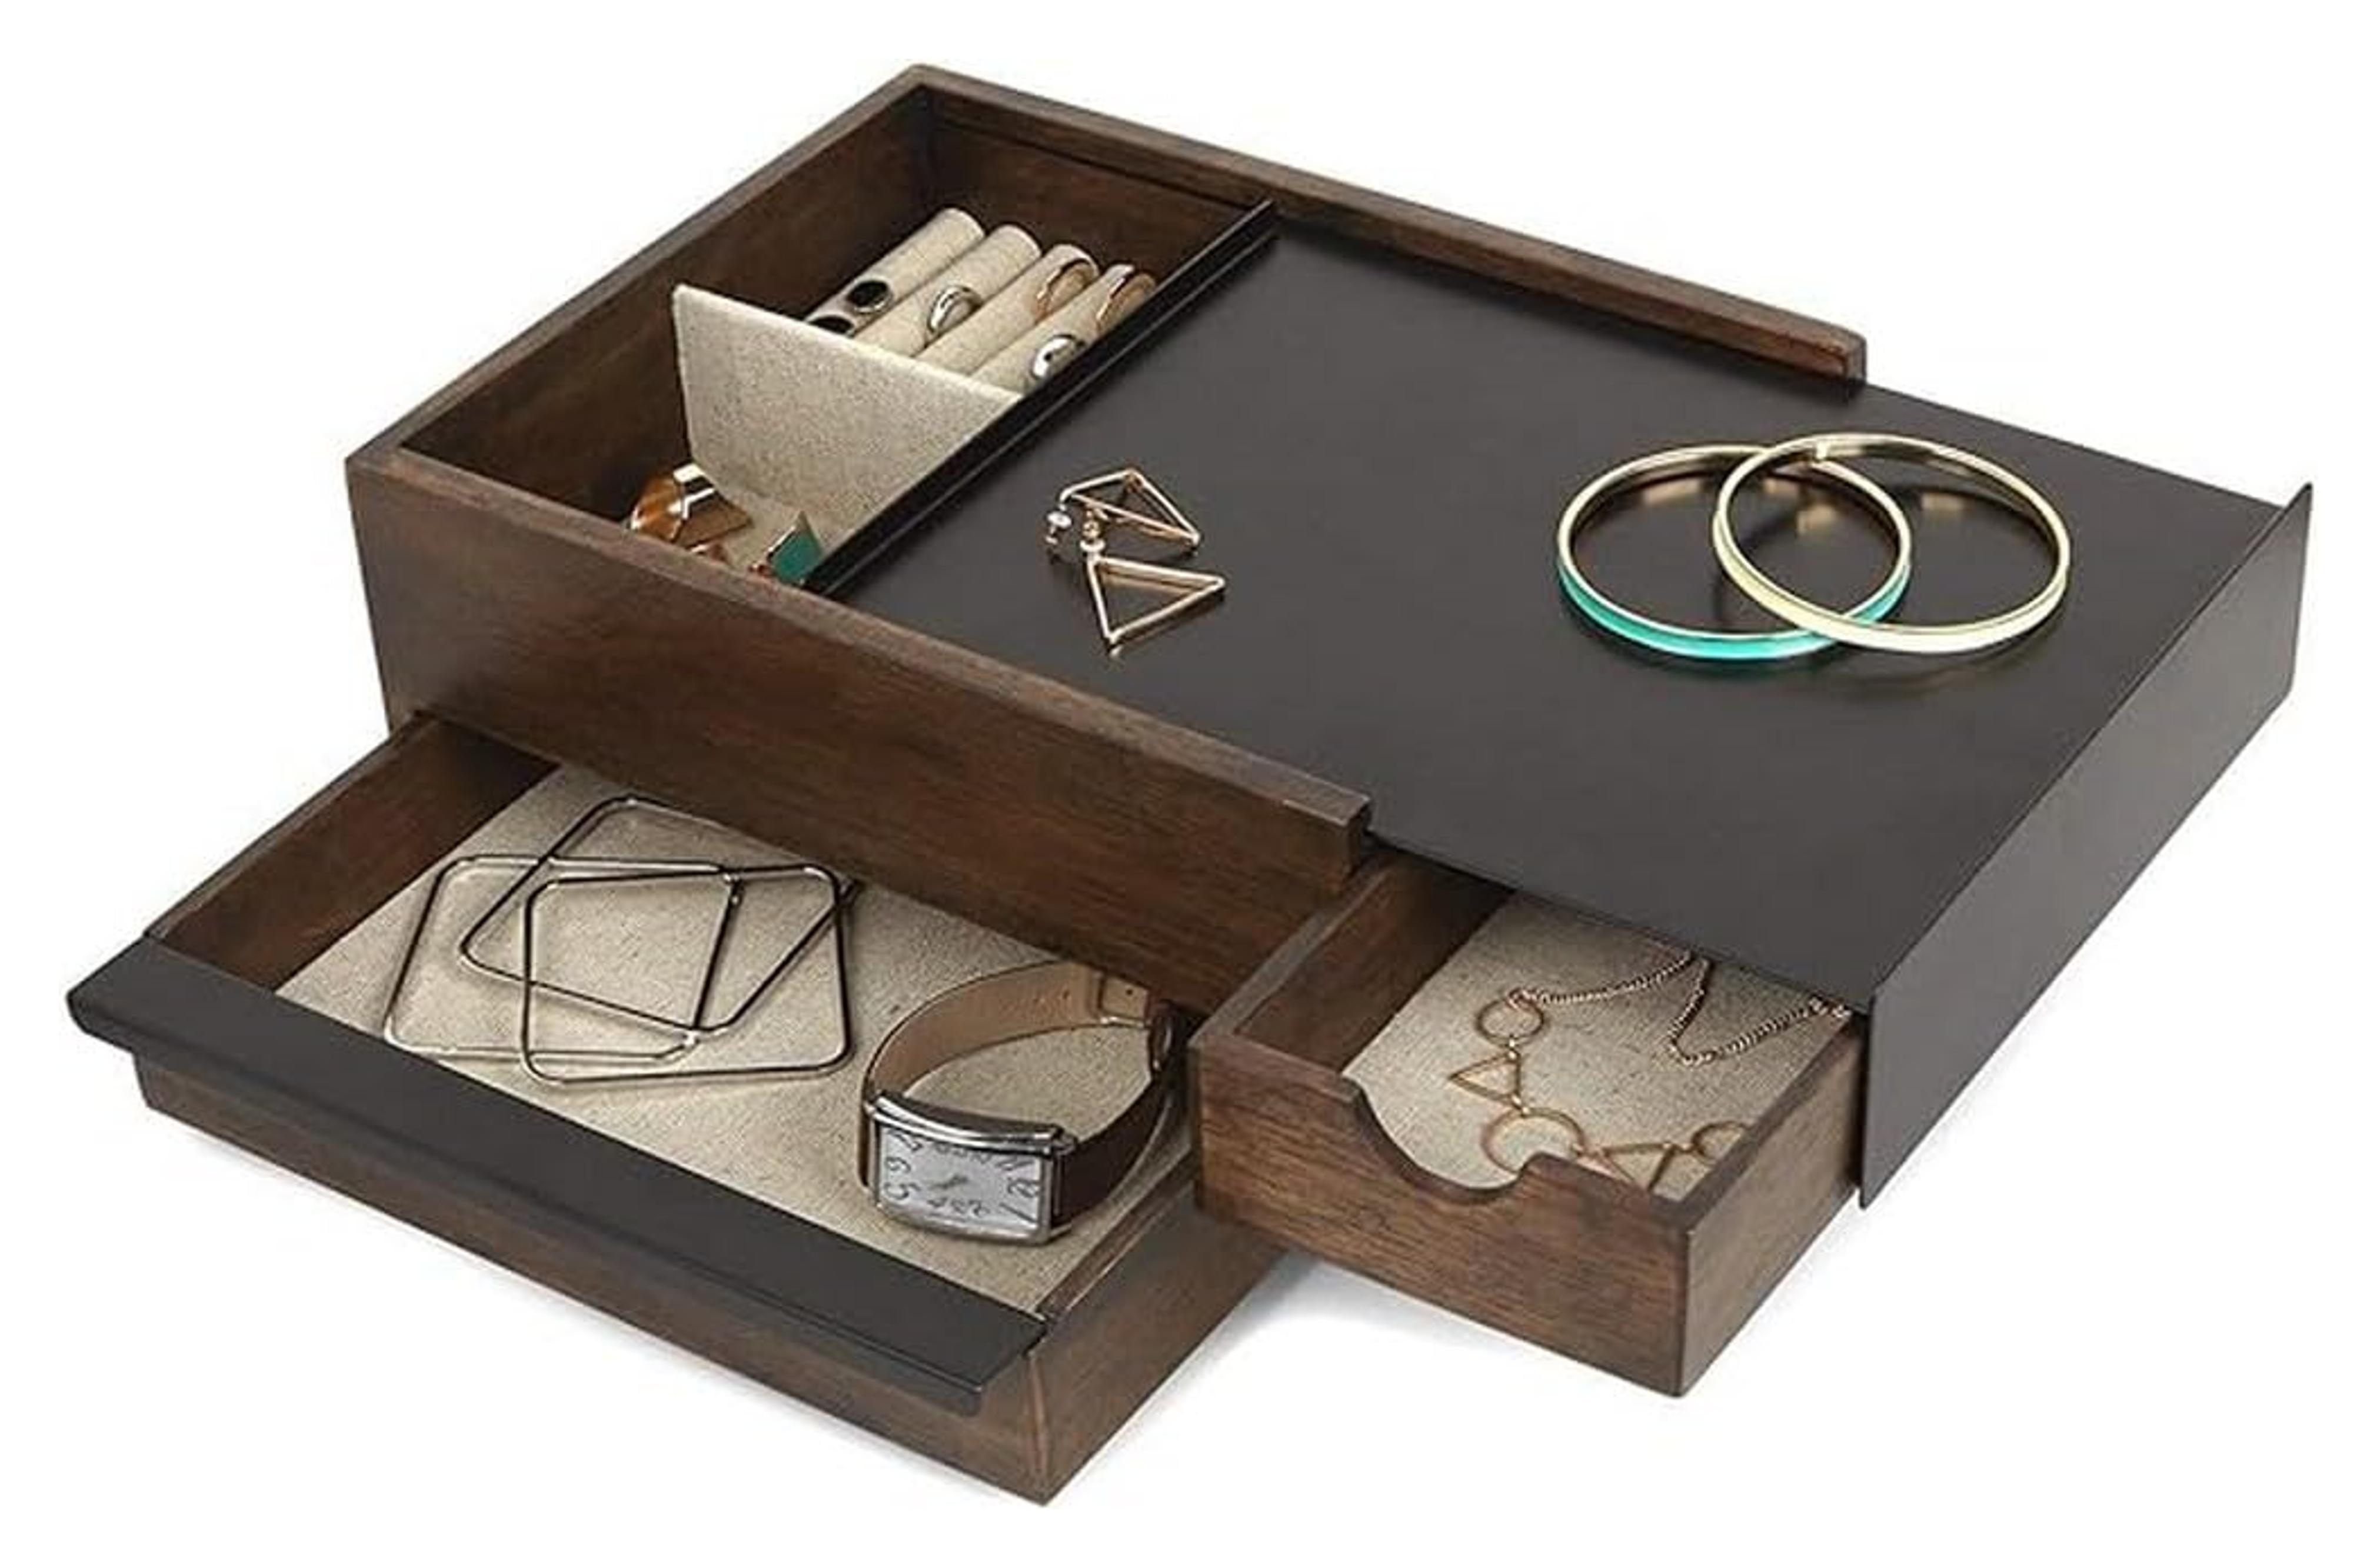 Amazon.com: Umbra Stowit Storage Box : Clothing, Shoes & Jewelry